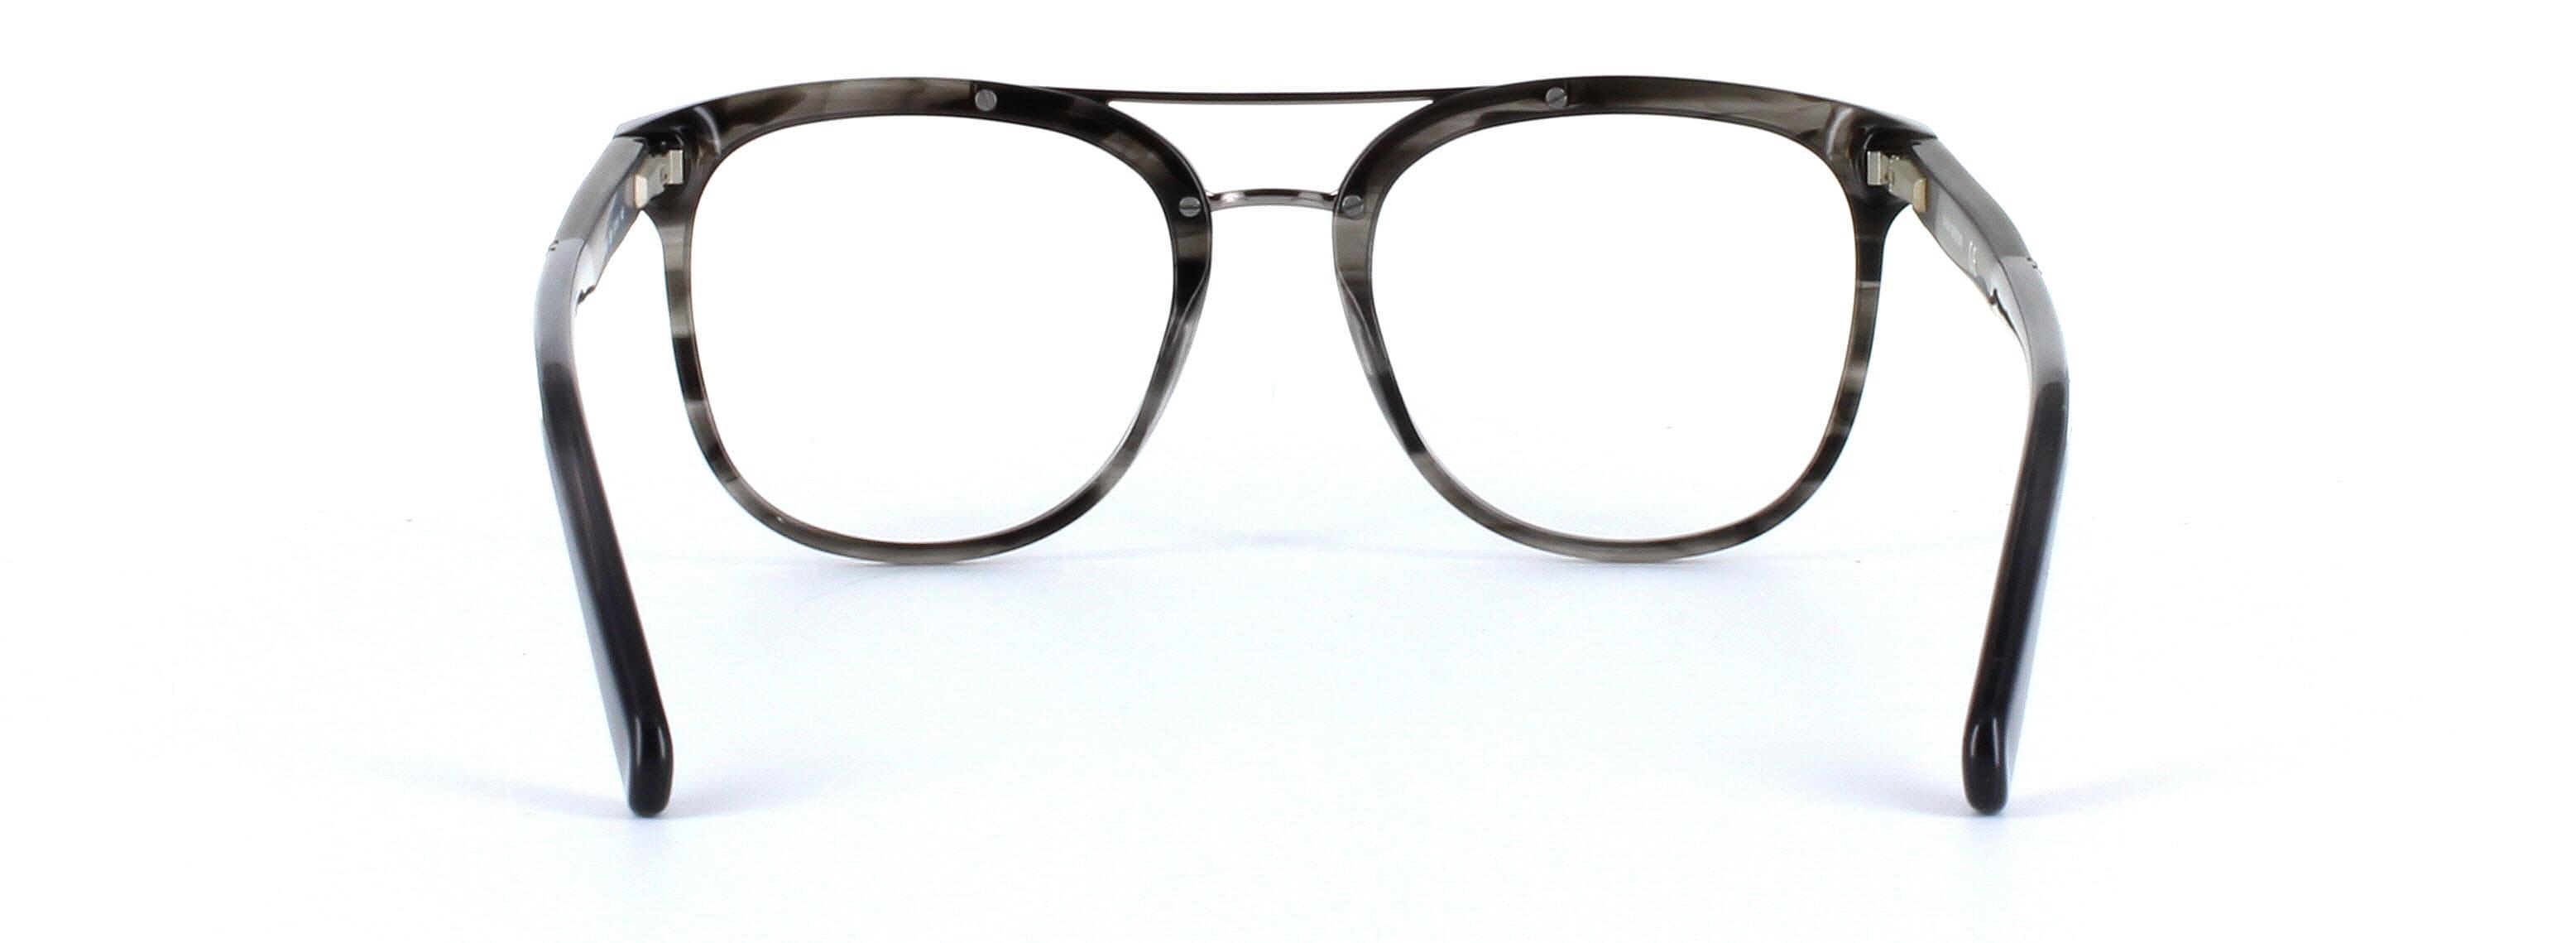 GUESS (GU1953-020) Grey Full Rim Square Acetate Glasses - Image View 3